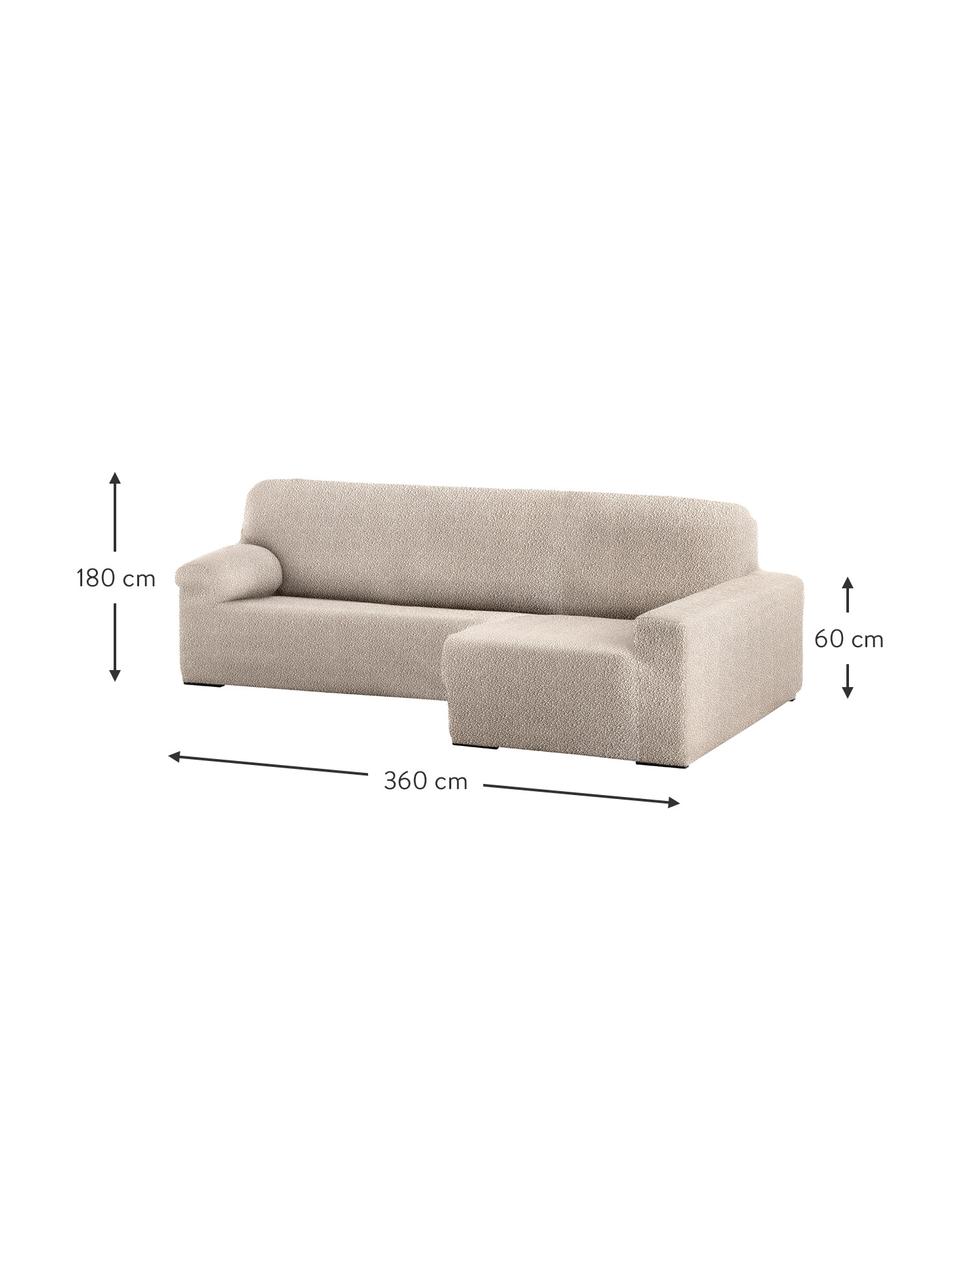 Housse de canapé d'angle Roc, 55 % polyester, 35 % coton, 10 % élastomère, Couleur crème, larg. 360 x prof. 180 cm, méridienne à droite